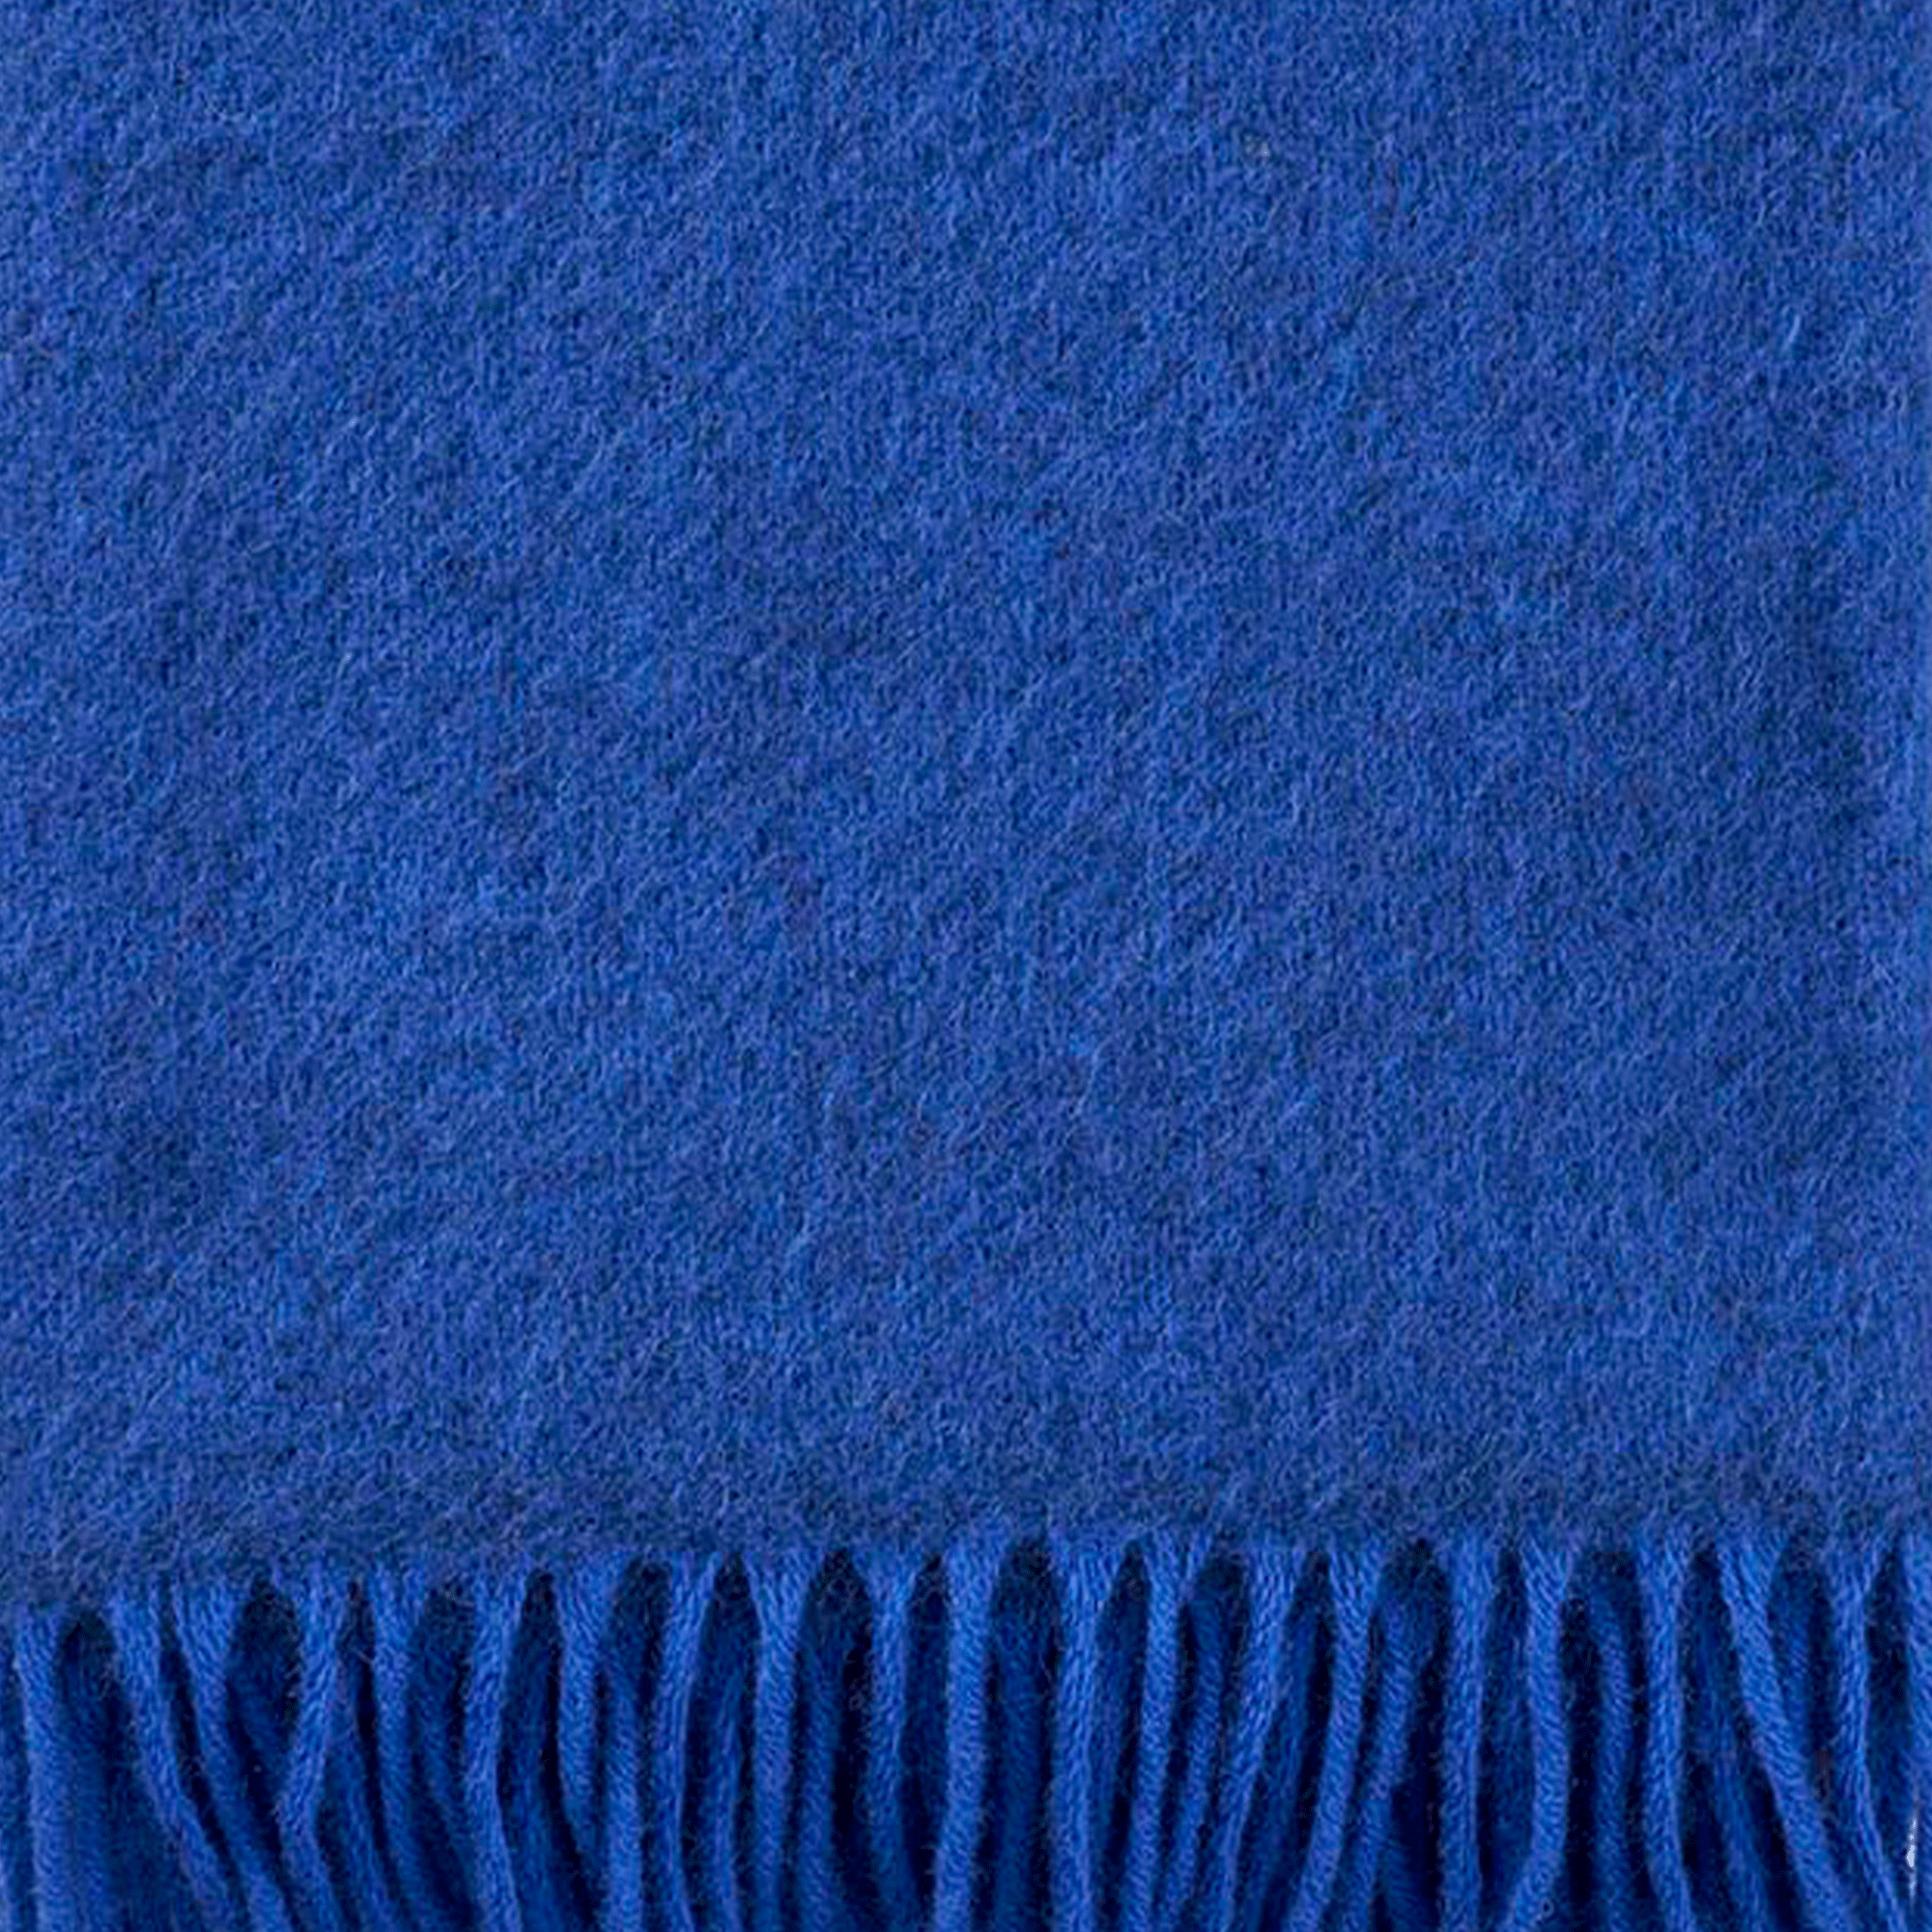 Gotland Blue 130x200cm Brushed Wool Throw